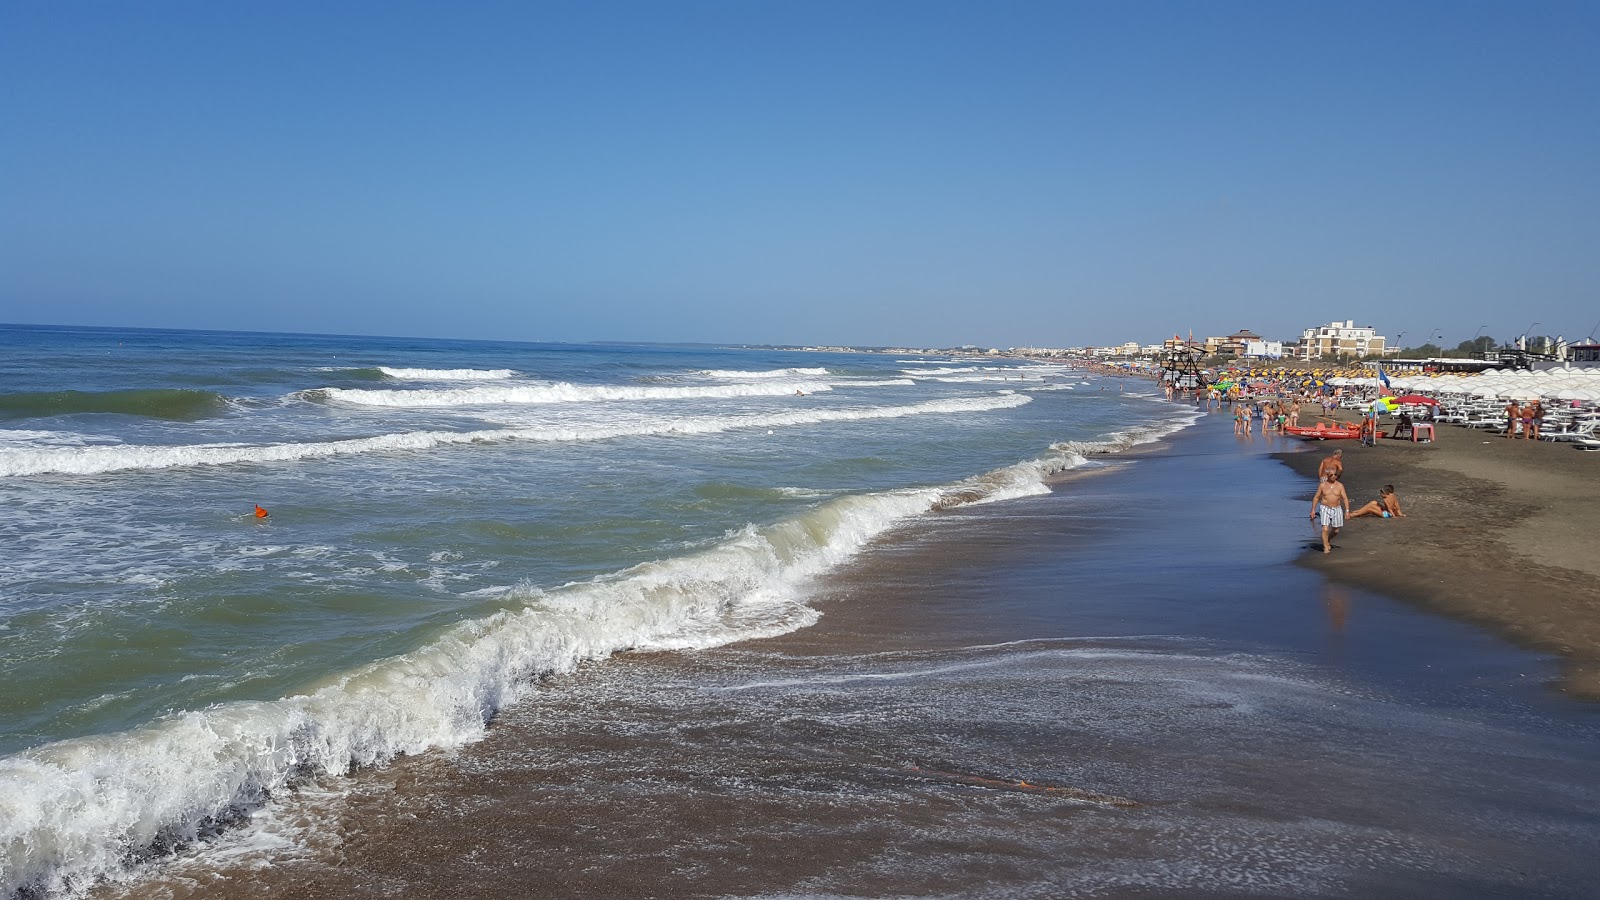 Fotografija Capoportiere beach nahaja se v naravnem okolju